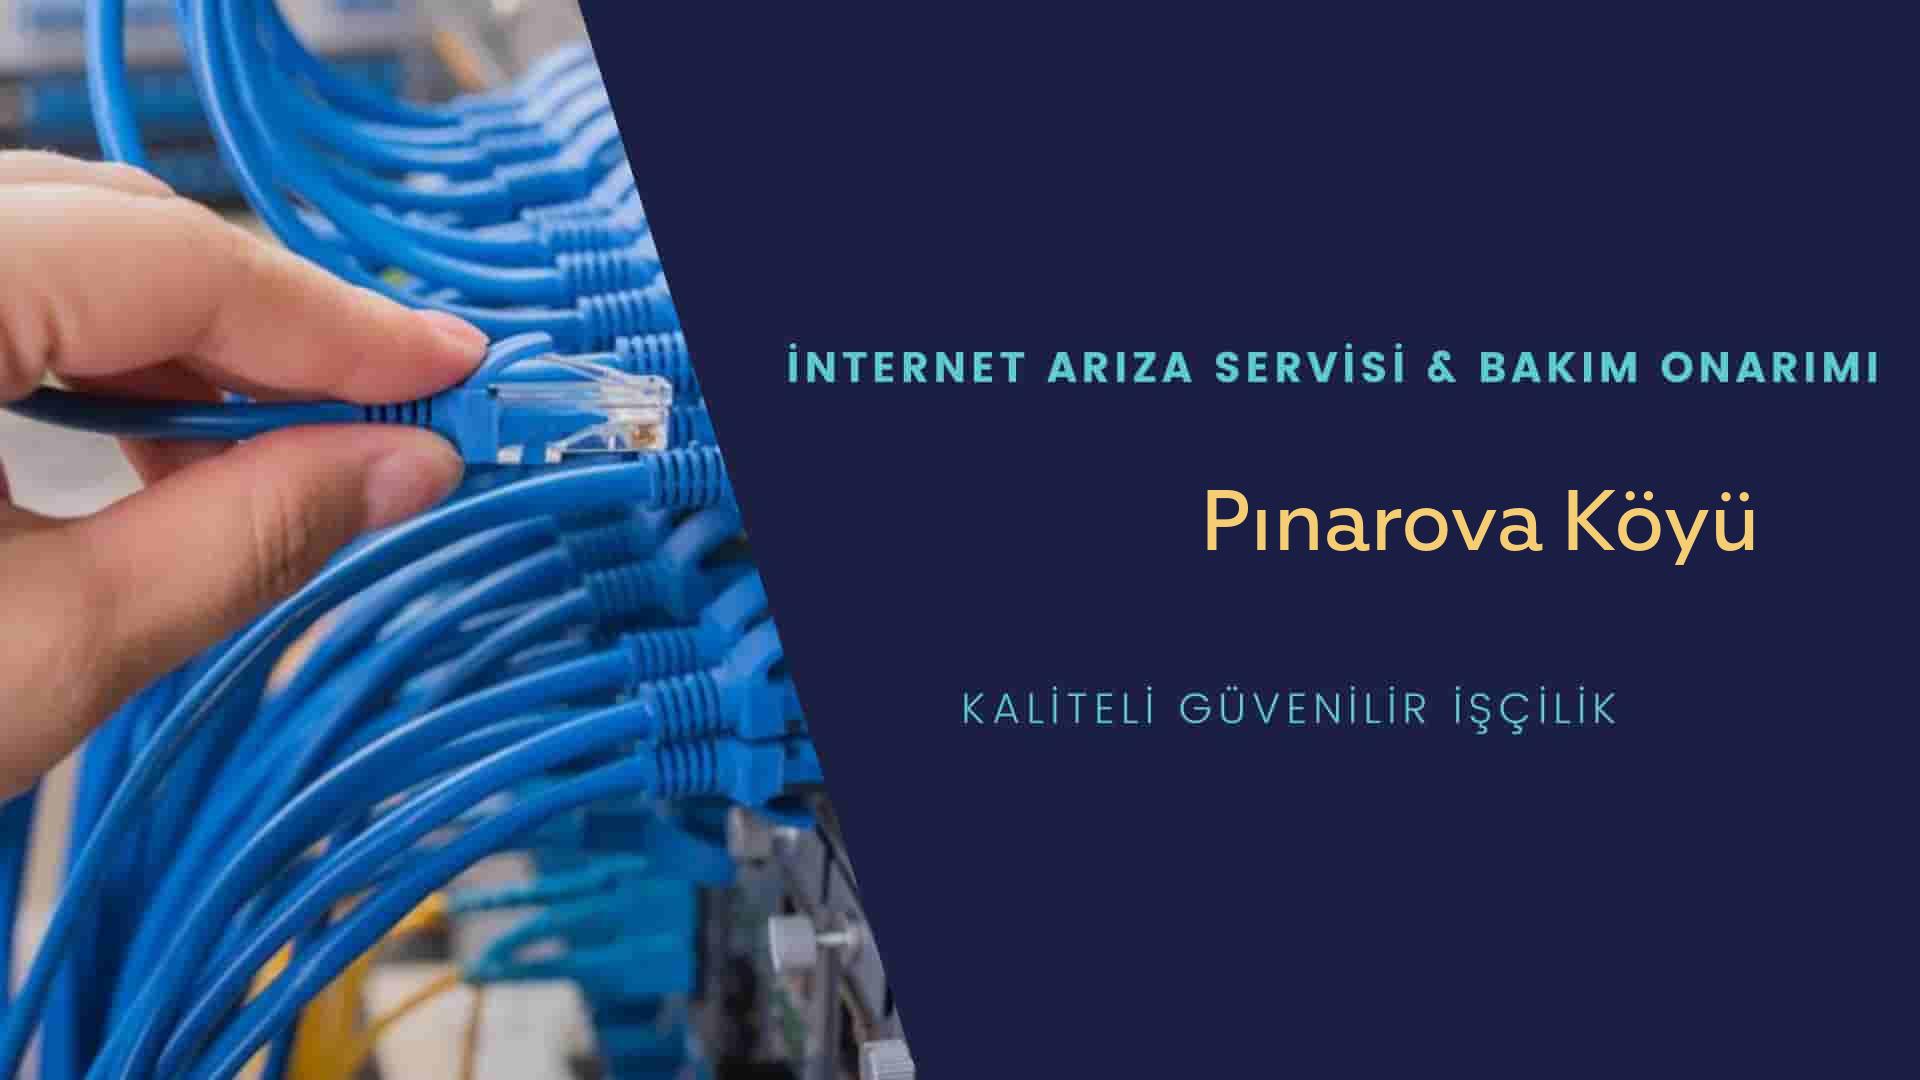 Pınarova Köyü internet kablosu çekimi yapan yerler veya elektrikçiler mi? arıyorsunuz doğru yerdesiniz o zaman sizlere 7/24 yardımcı olacak profesyonel ustalarımız bir telefon kadar yakındır size.